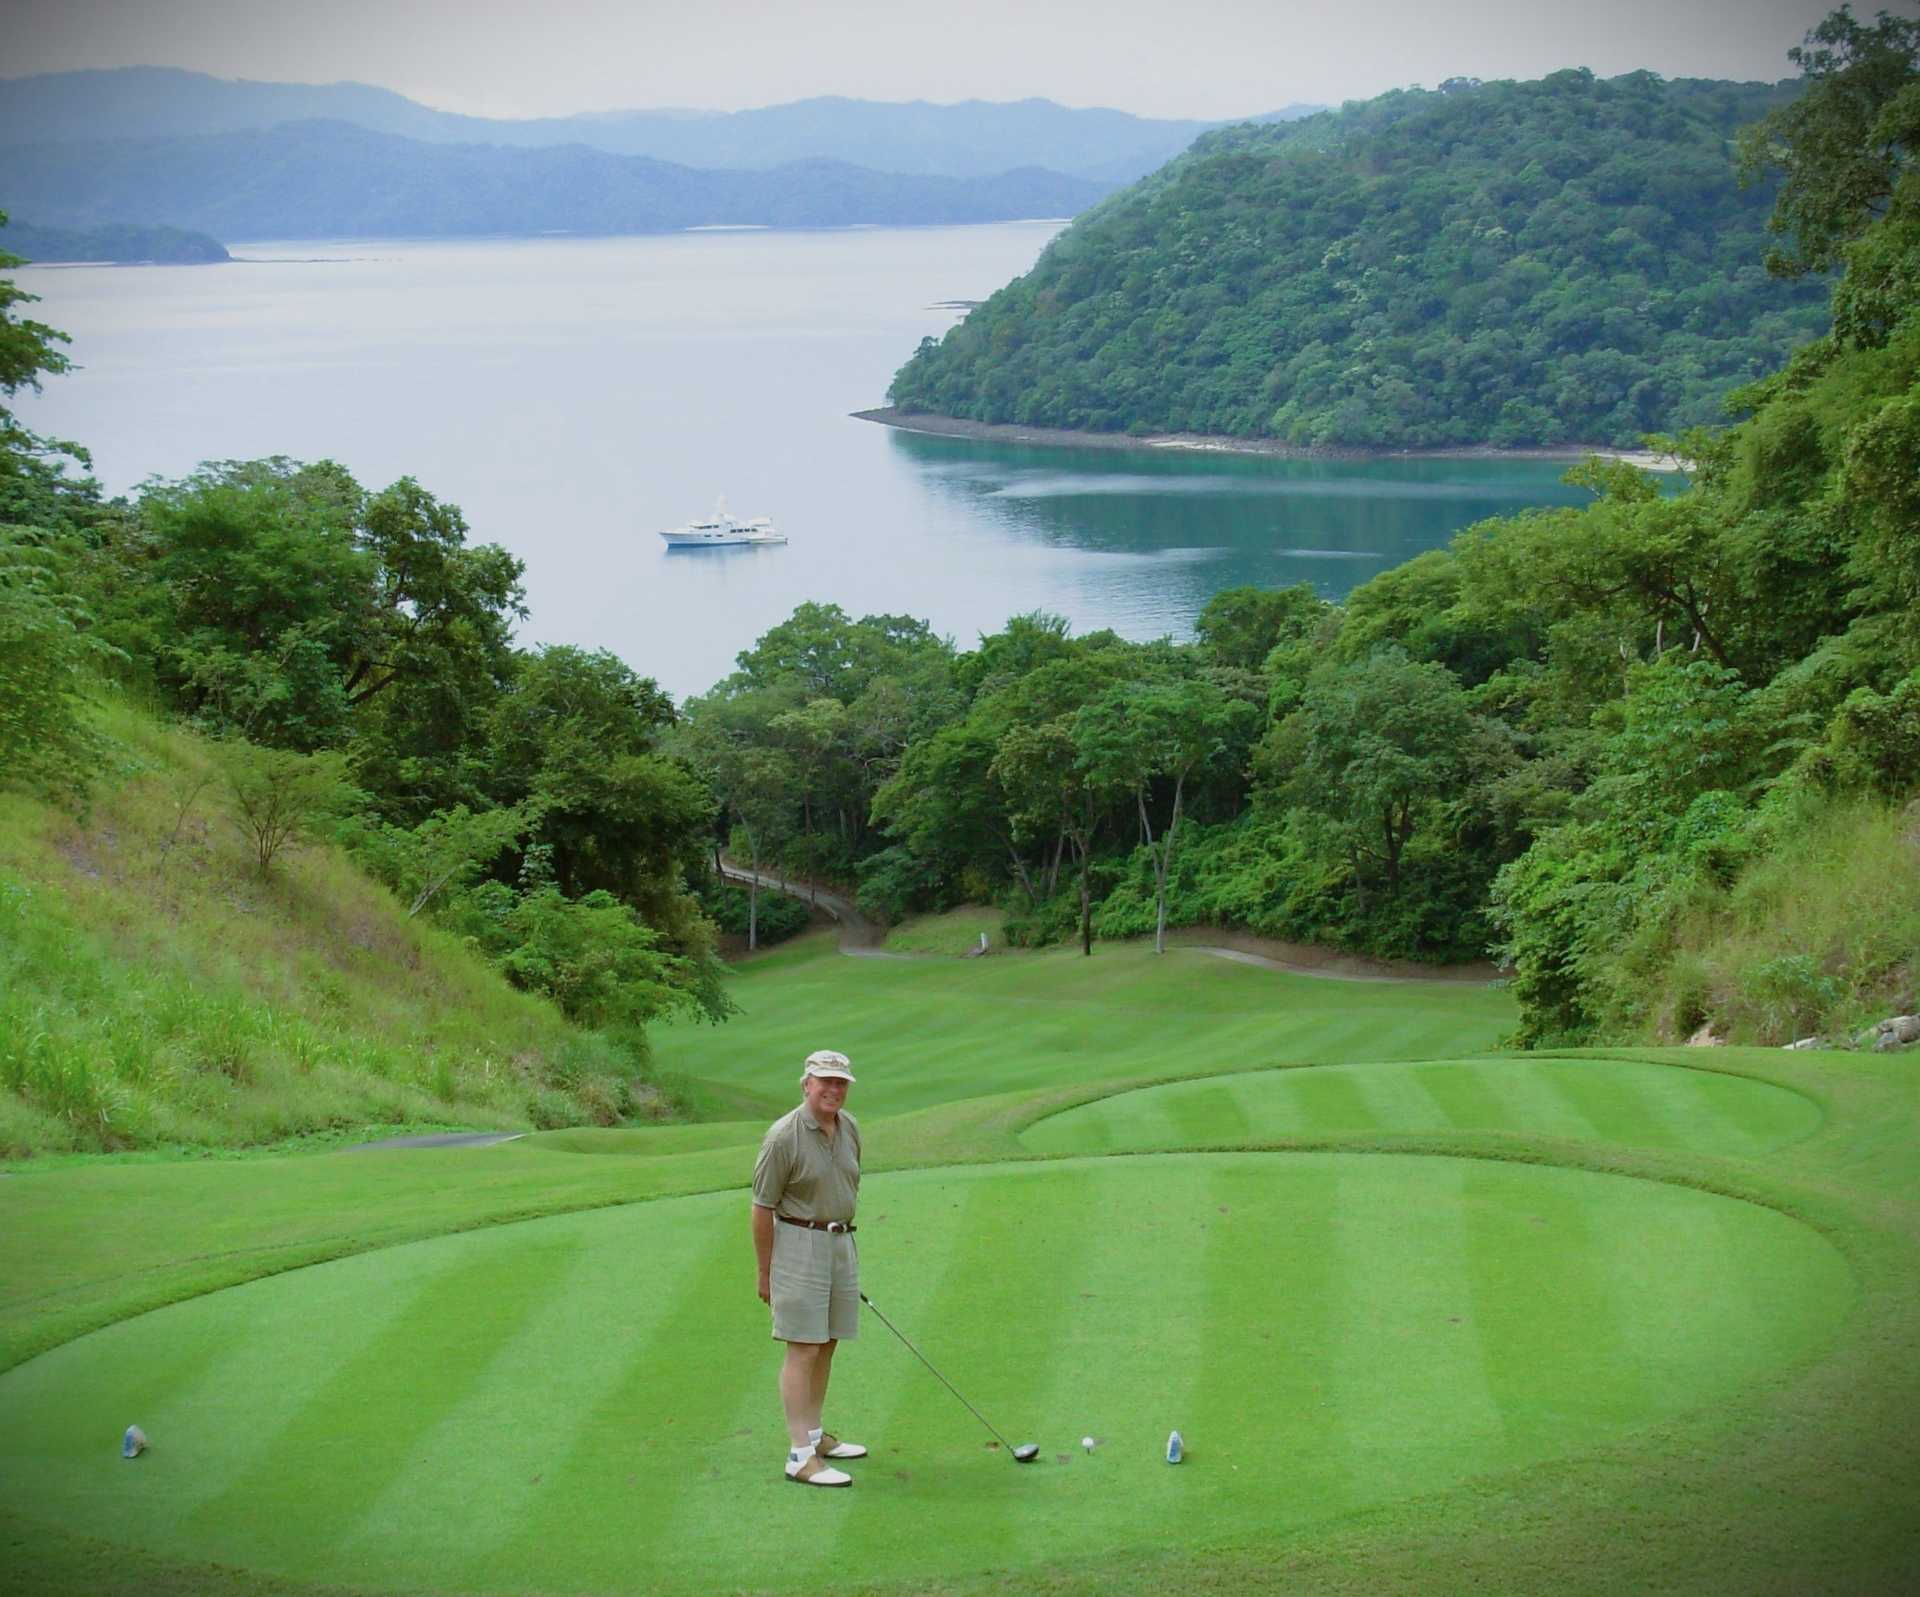 An elderly man playing golf near the jungle